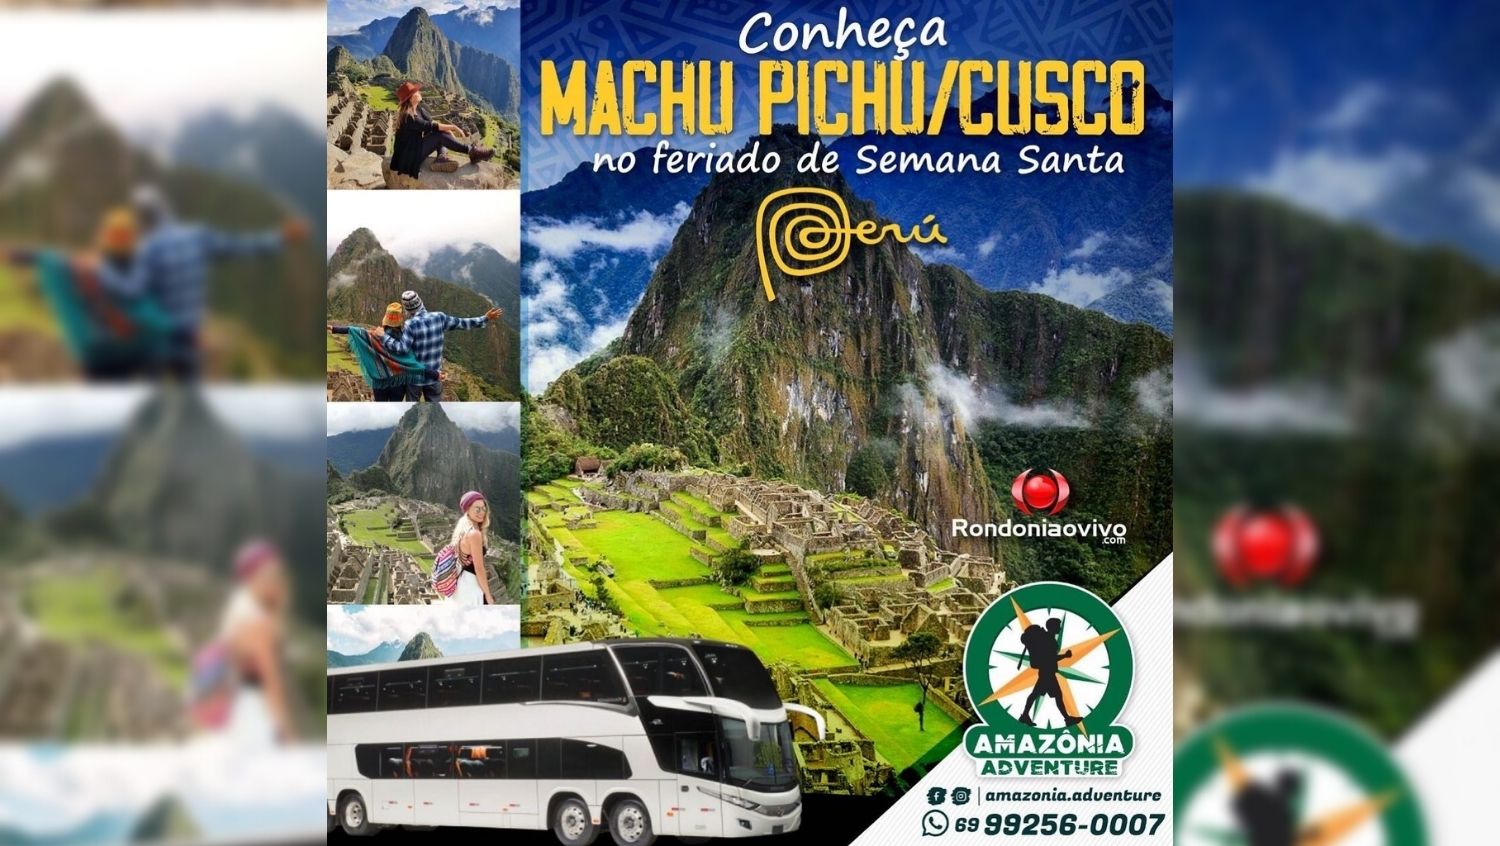 SEMANA SANTA: Amazônia Adventure lança a Expedição Porto Velho - Machu Picchu